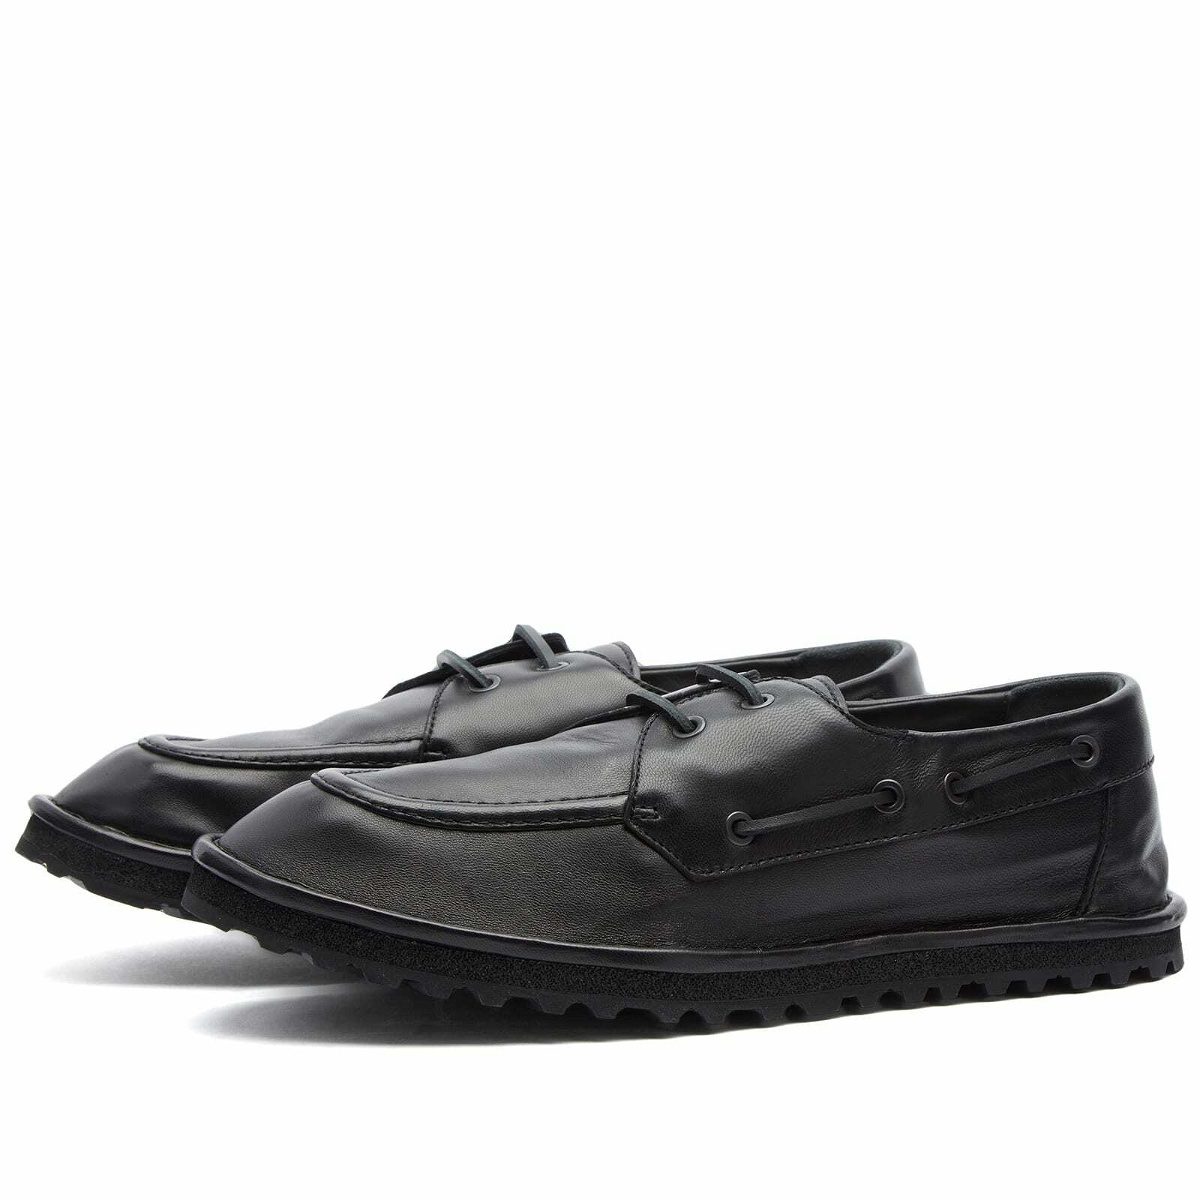 Photo: Dries Van Noten Men's Boat Shoe in Black Leather